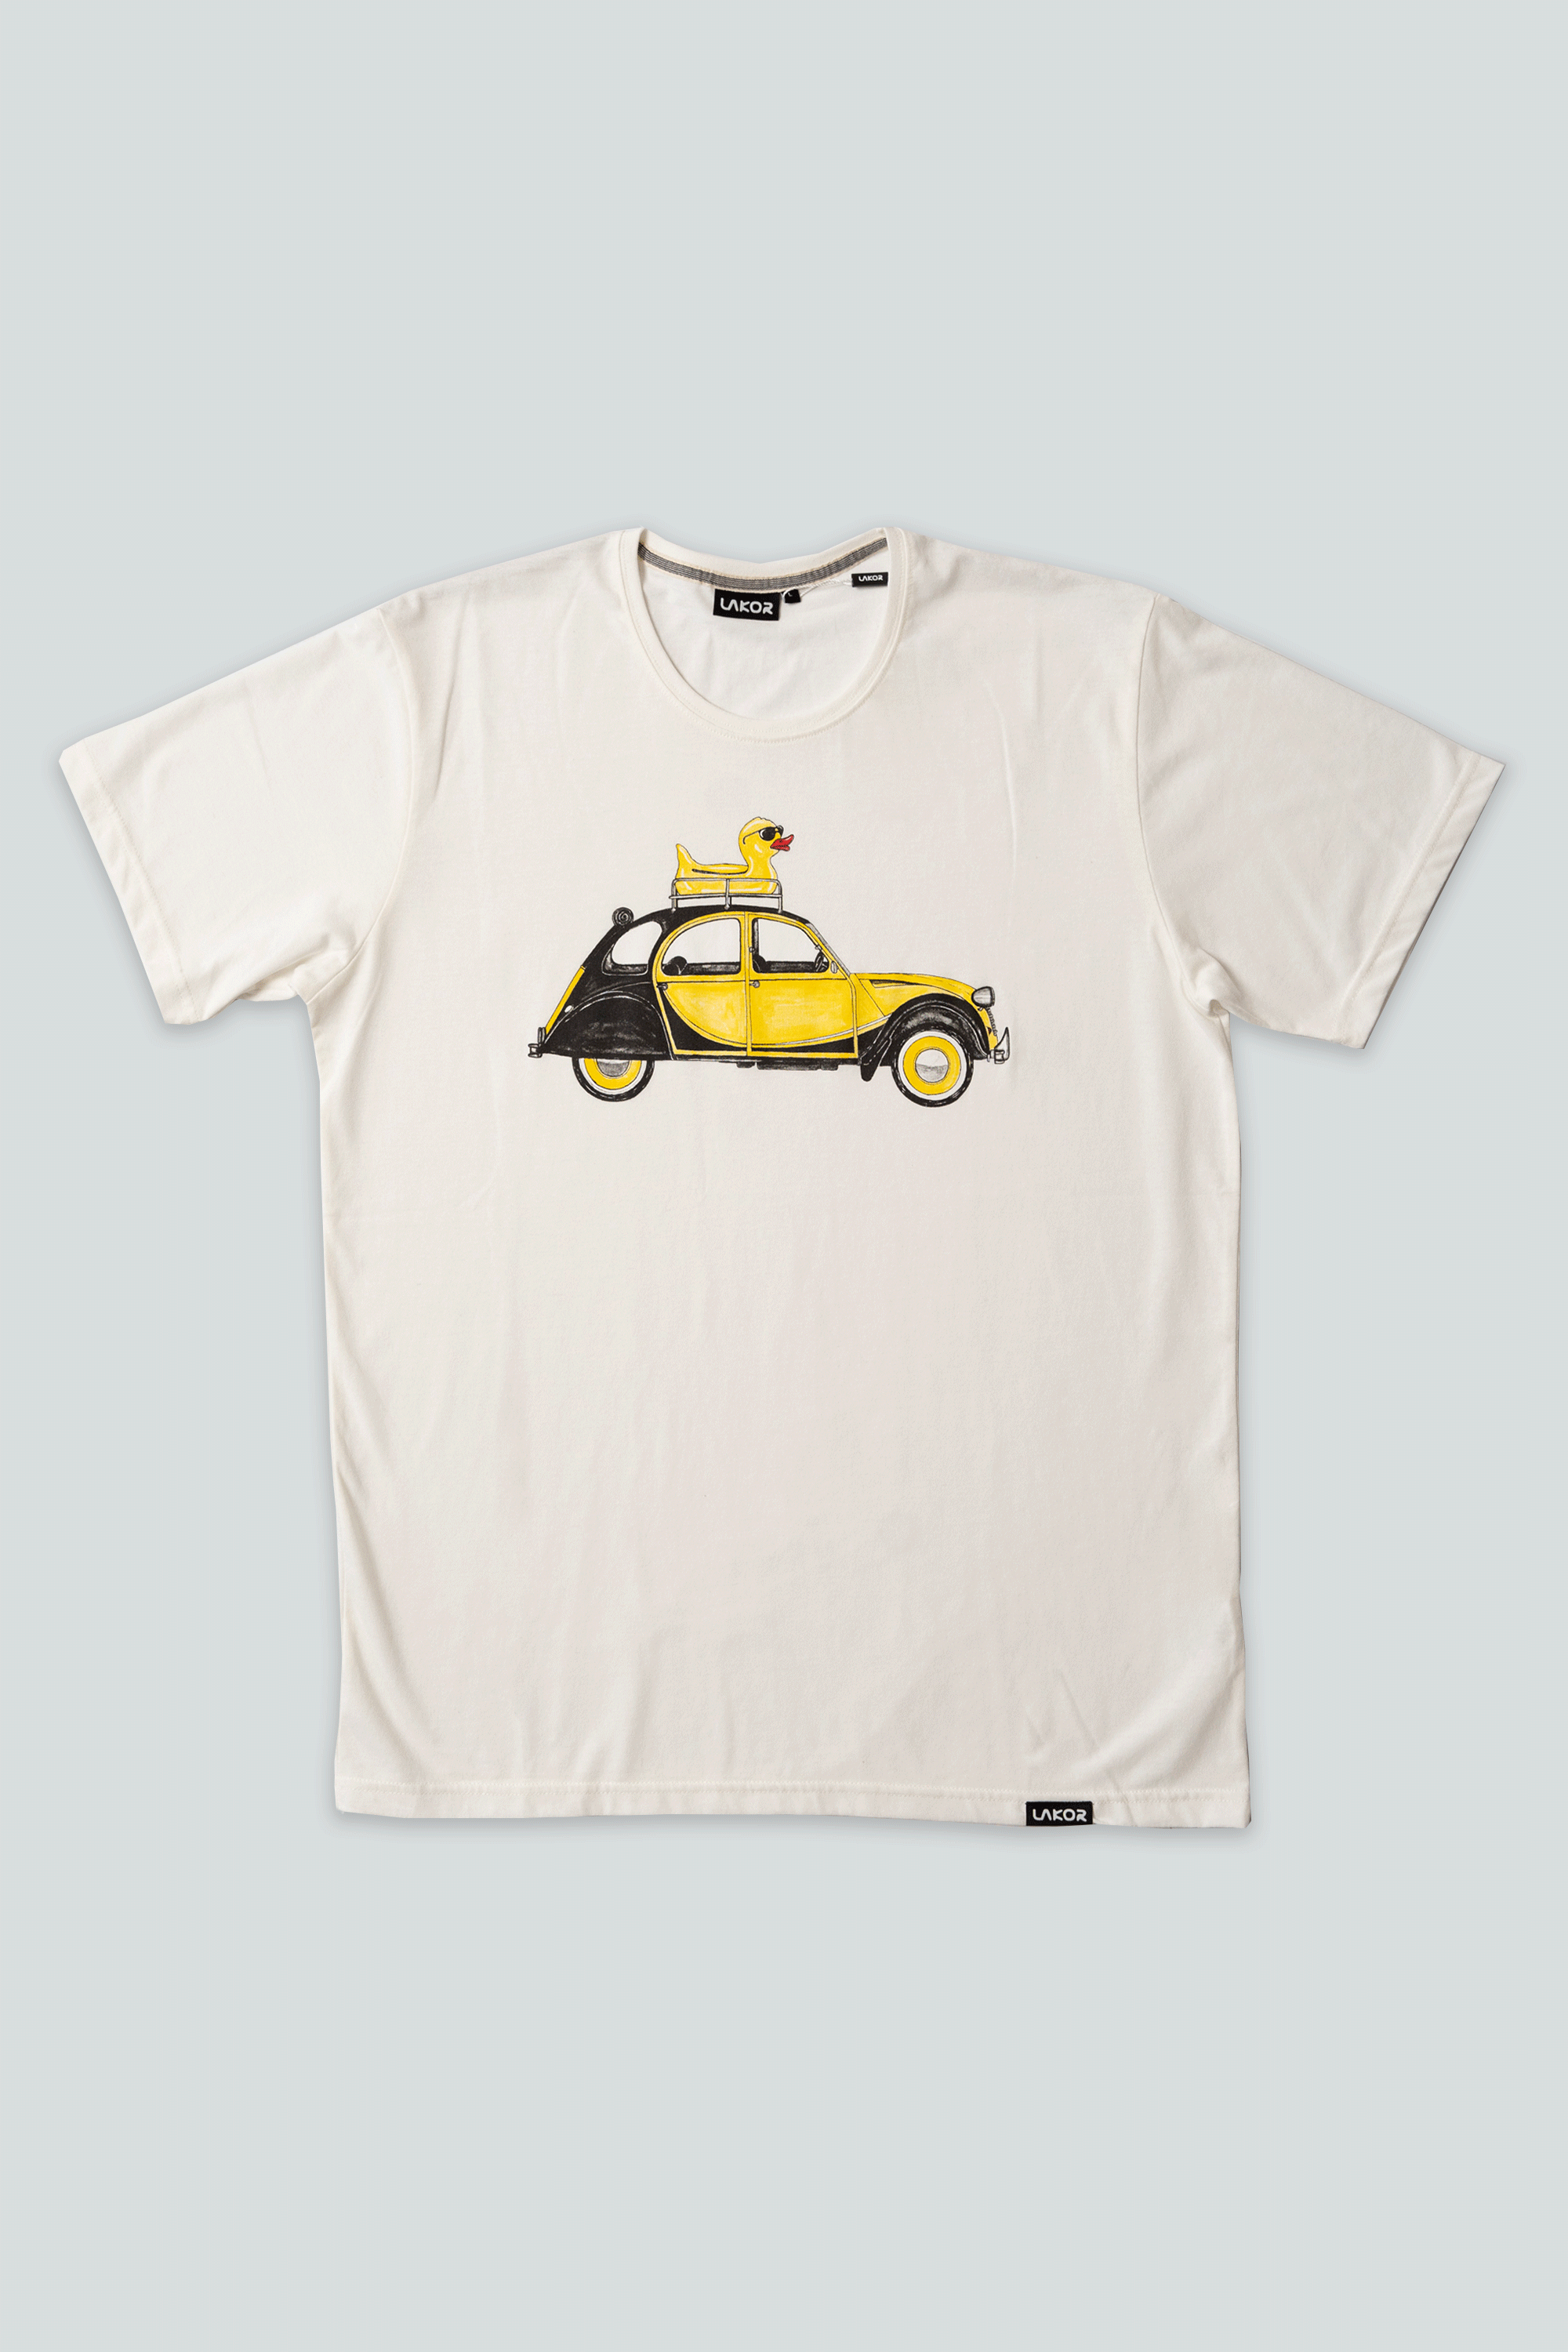 Rubberduck on Wheels T-shirt